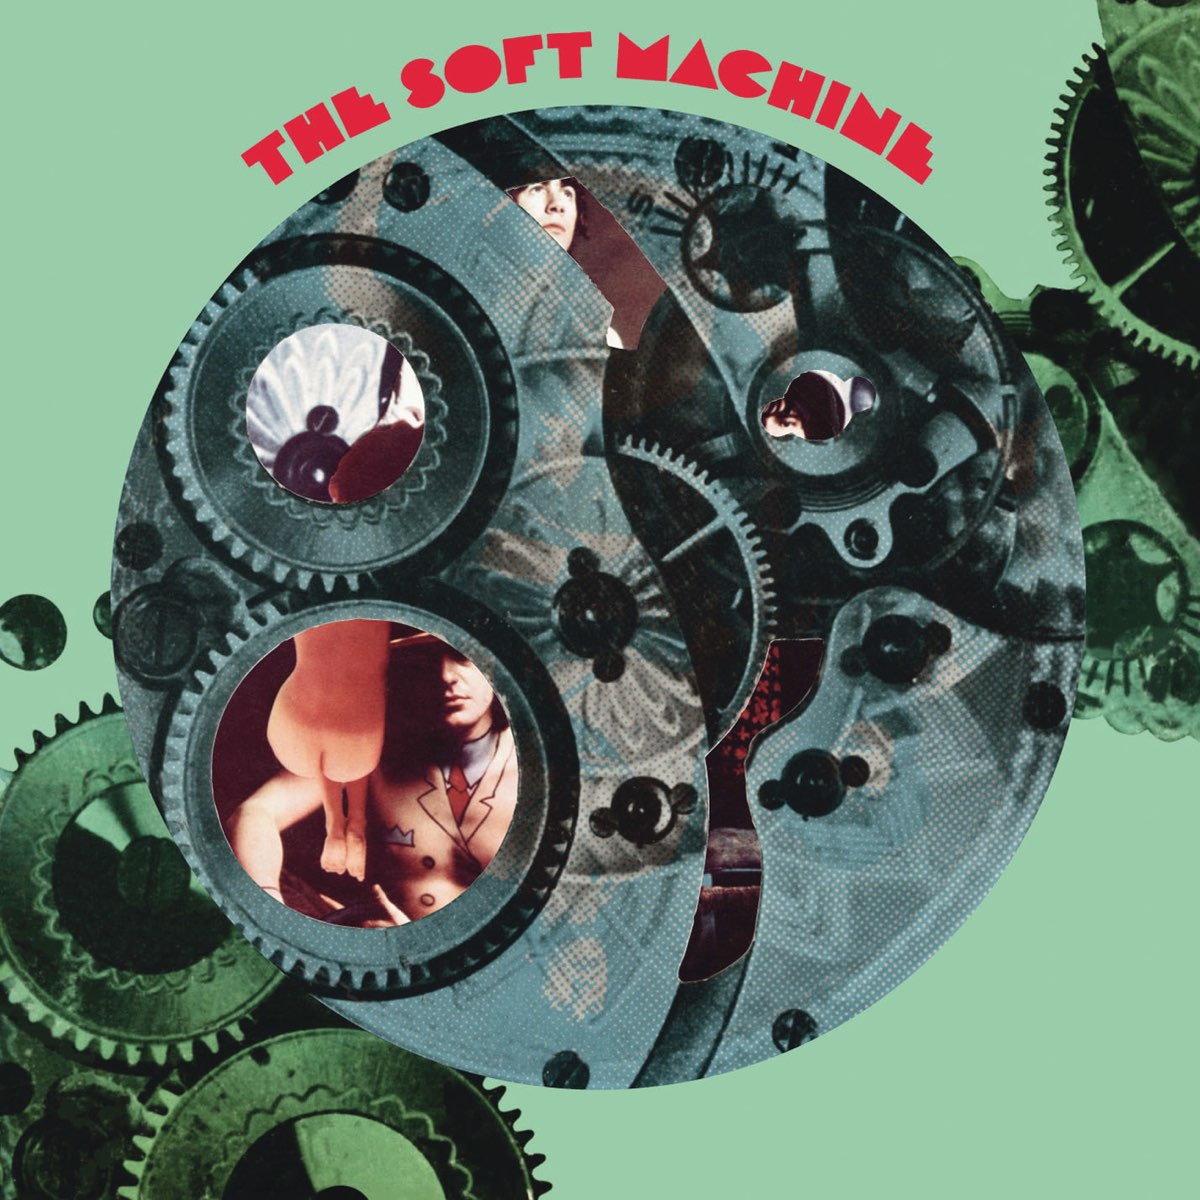 Machine On the Run - Single - Album by THE SKULL MACHINE - Apple Music